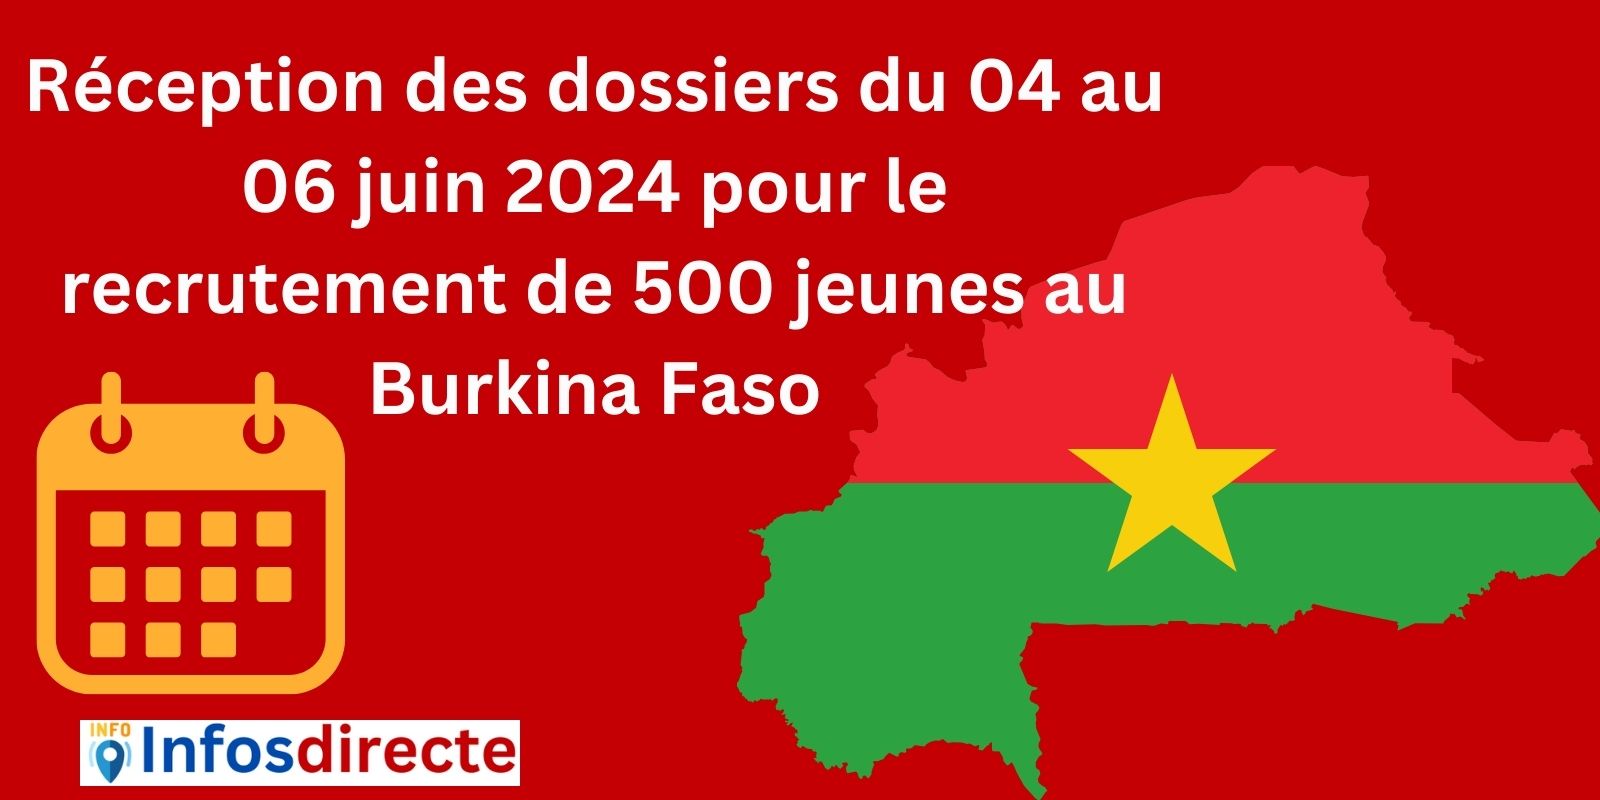 Réception des dossiers du 04 au 06 juin 2024 pour le recrutement de 500 jeunes au Burkina Faso